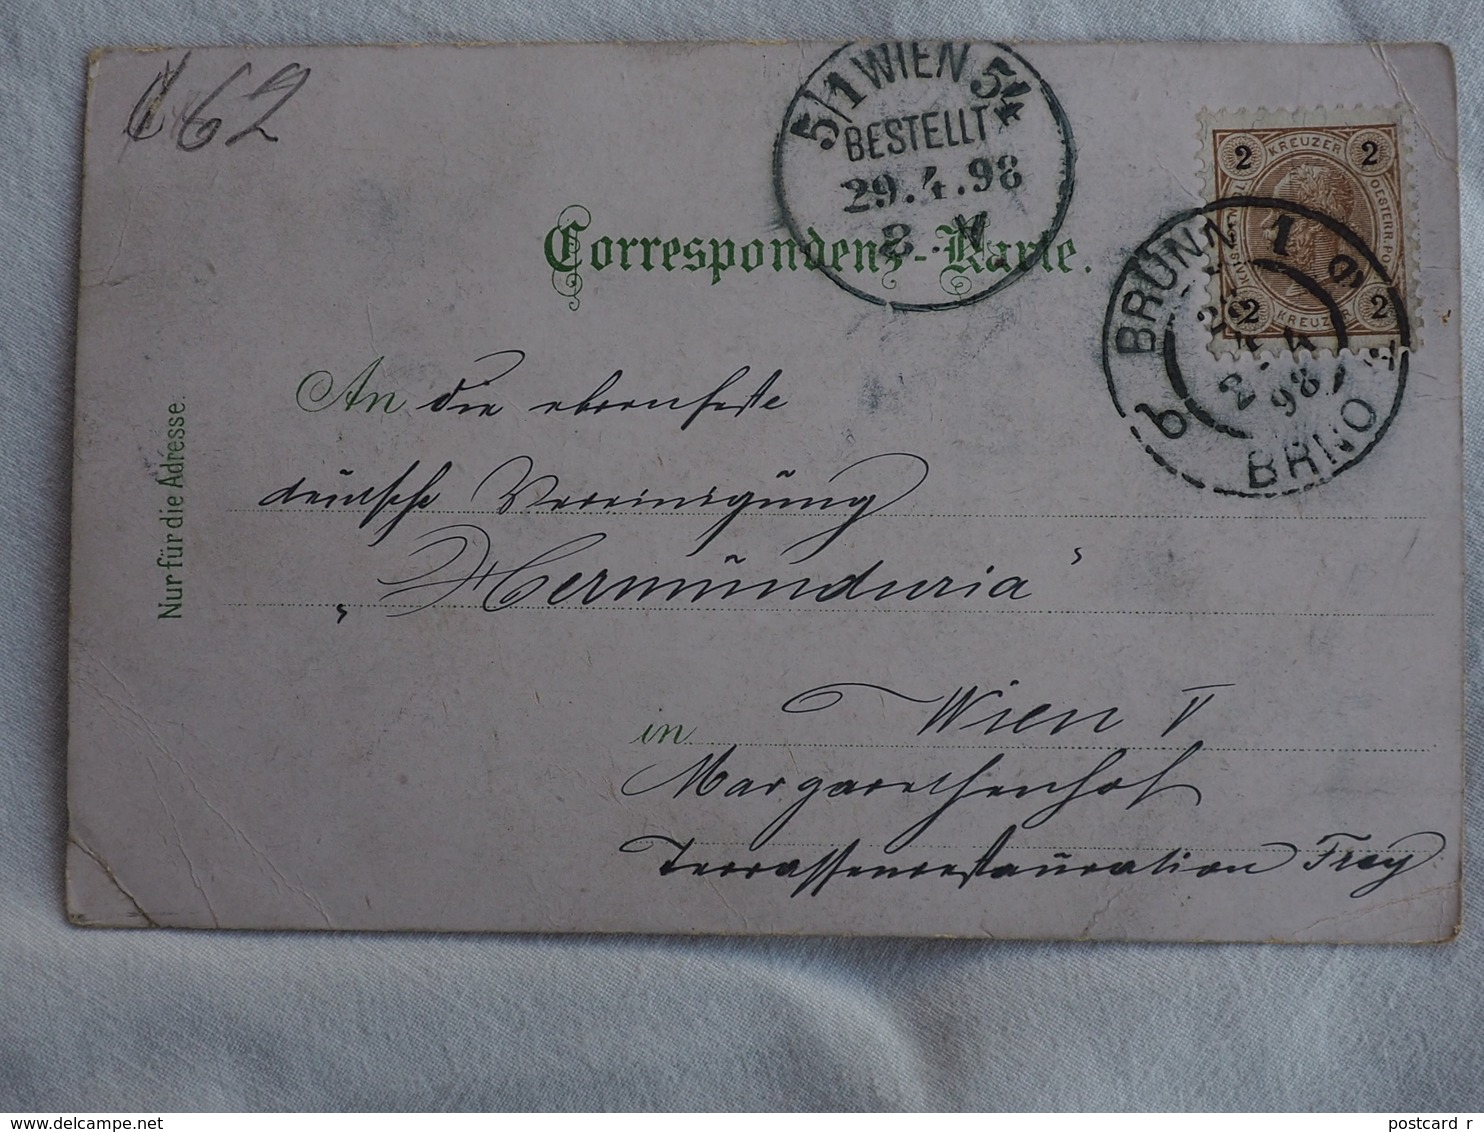 Fürst Otto Ed. Leopold Von Bismarck, Herzog Von Lauenburg Stamp 1898   A 208 - Historical Famous People